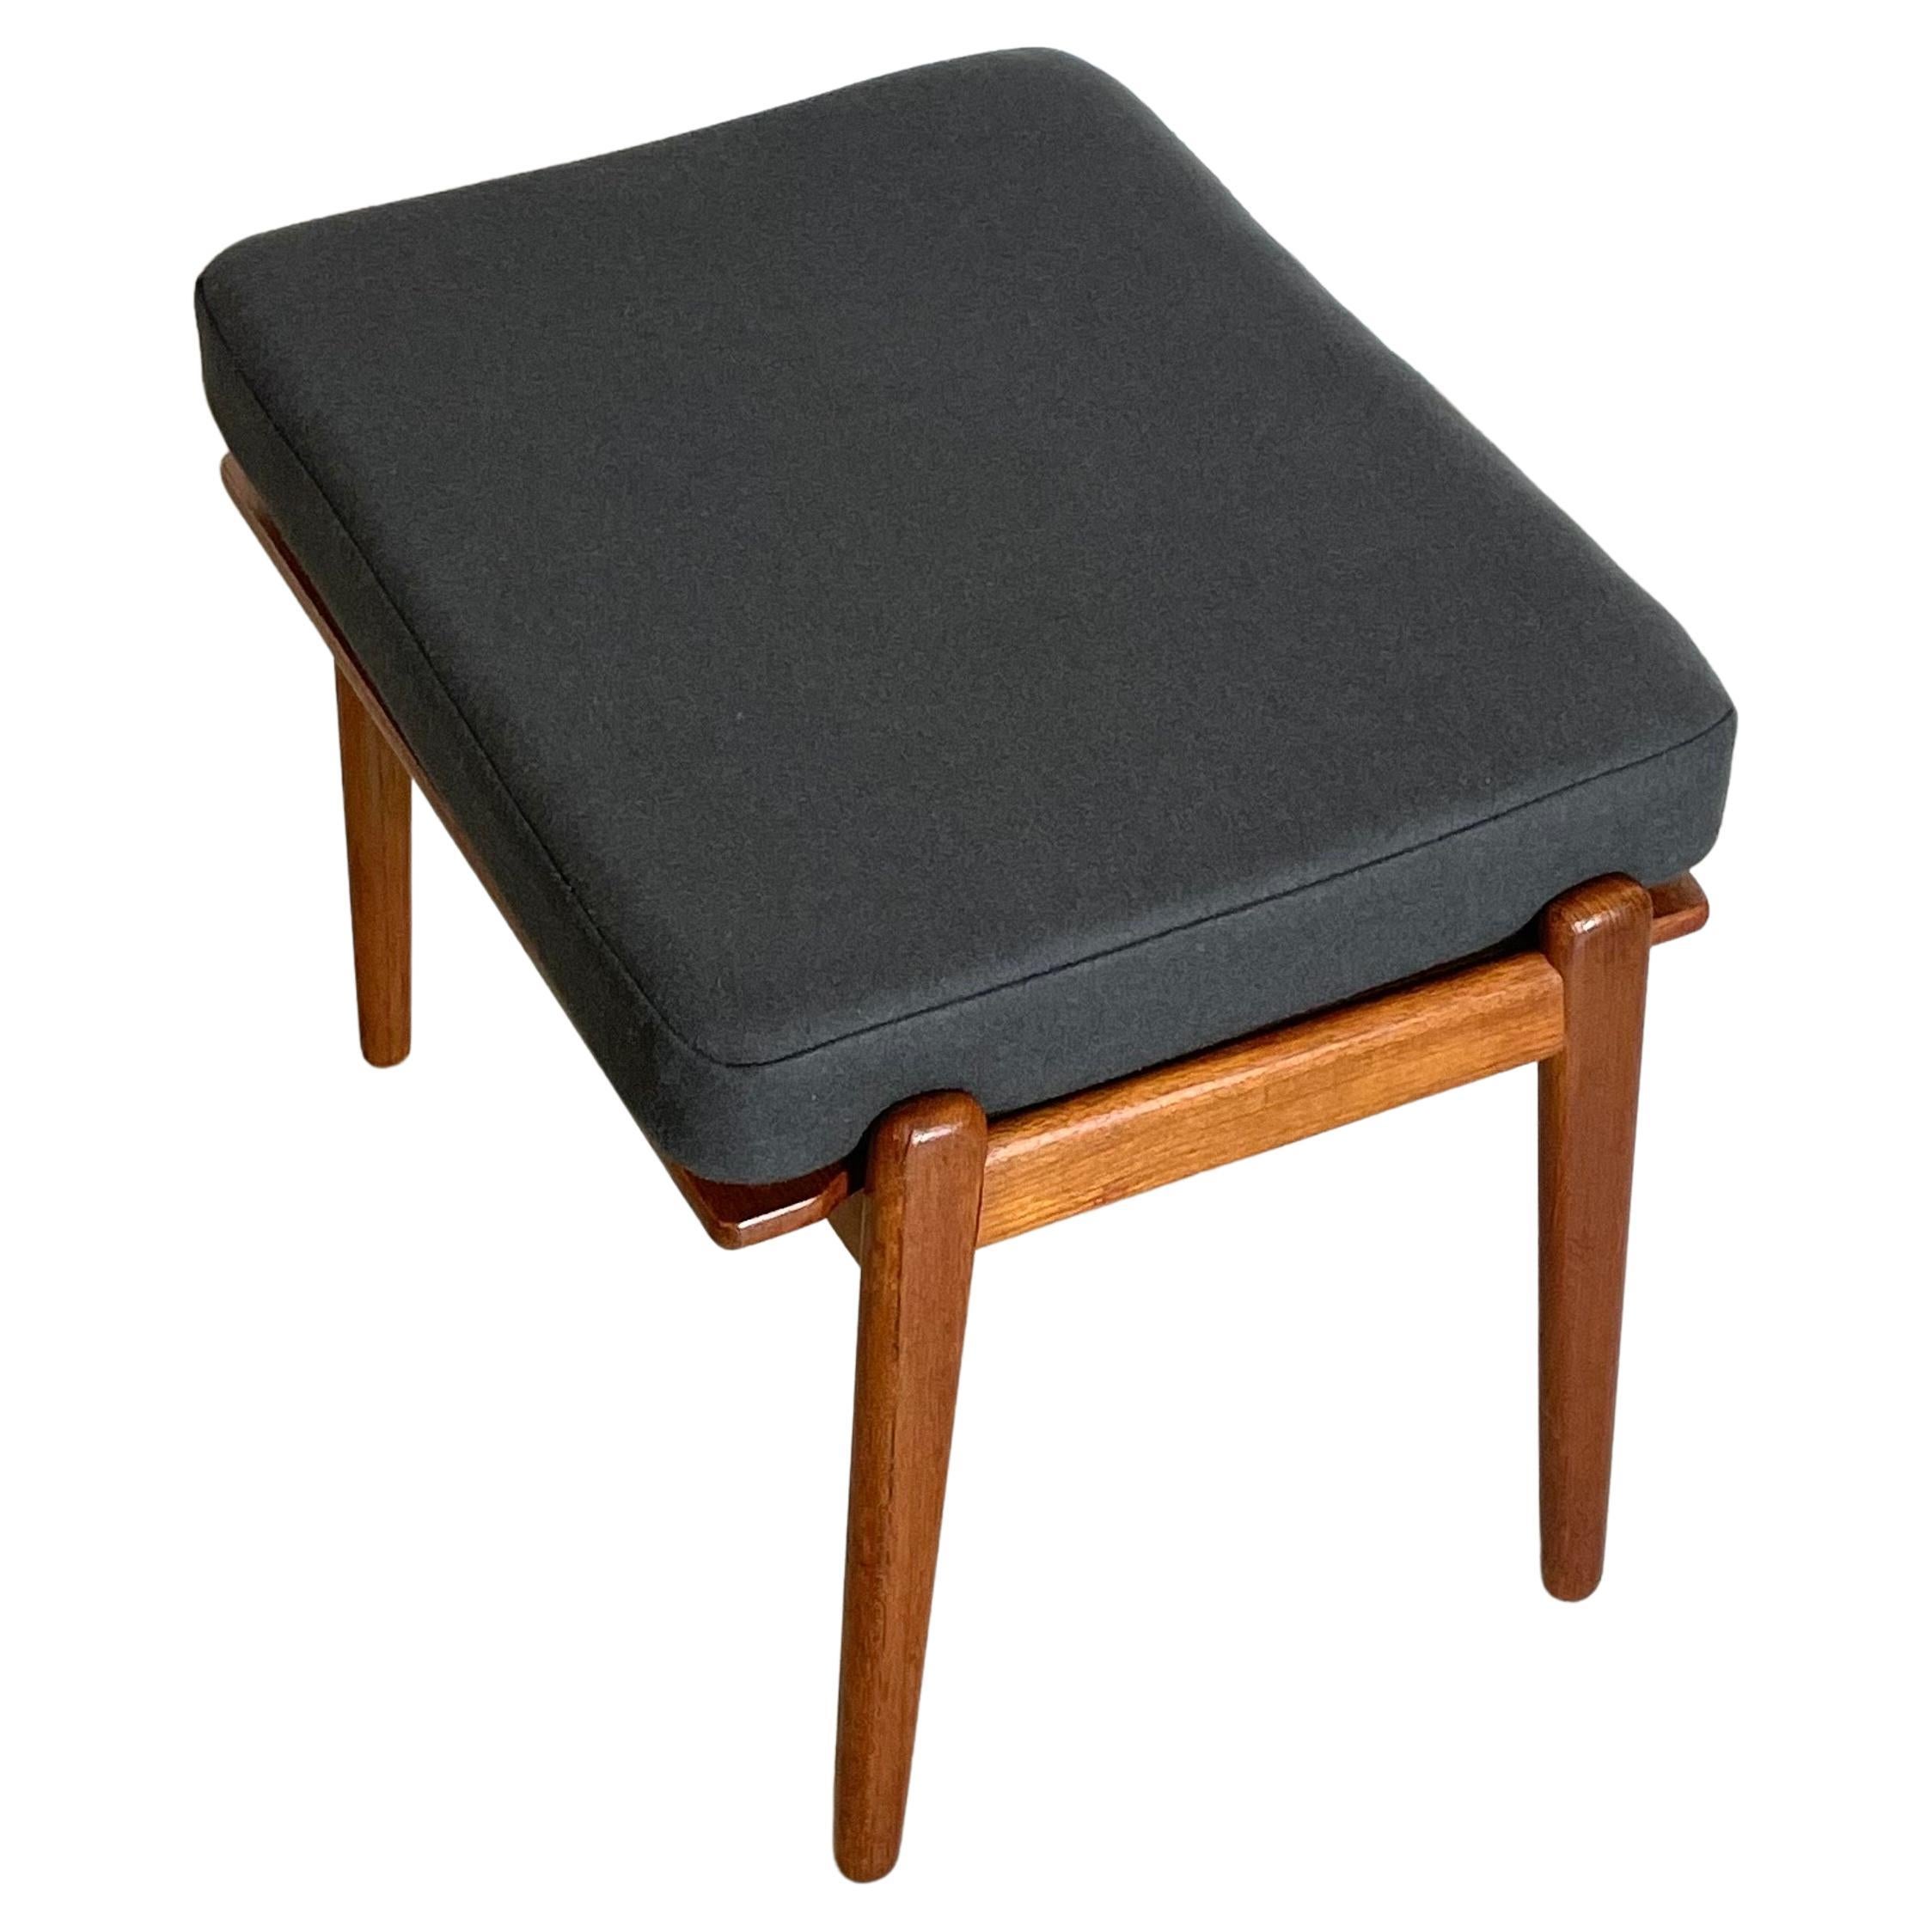 Seltener Sessel Modell 563, entworfen von Frederik Kayser für Vatne in Norwegen in den 1950er Jahren. Restauriert und mit neuen Sitzkissen in einem edlen abnehmbaren Bezug aus 100% Schurwolle ausgestattet.

Abmessungen: 75 x 66 x 79 cm

Wir können